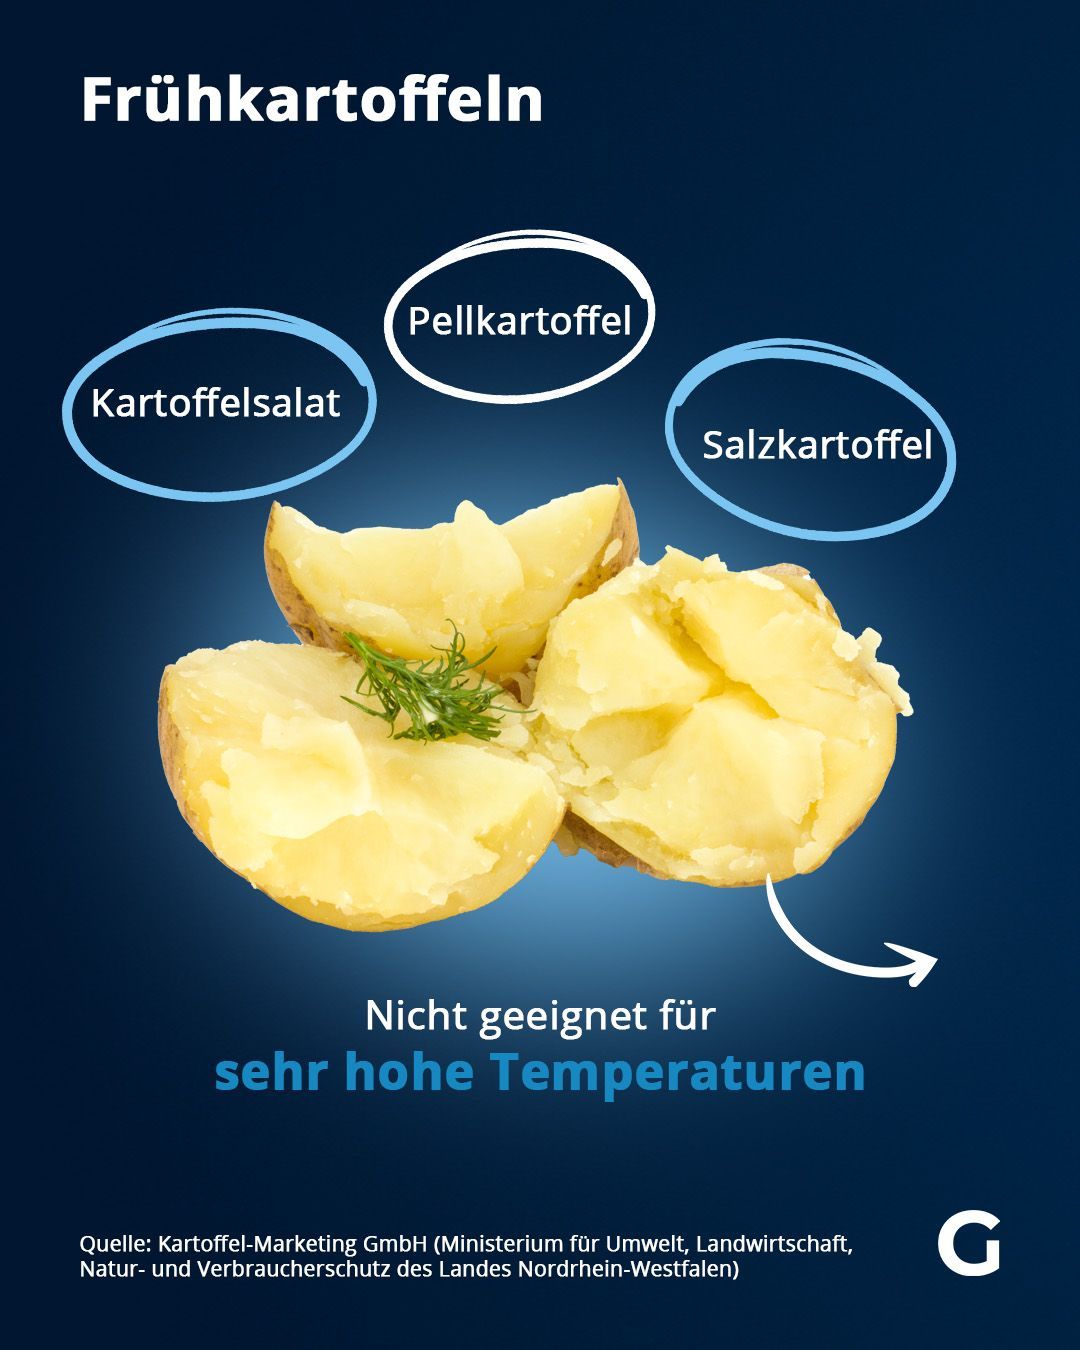 Frühkartoffeln kommen am besten zum Einsatz, wenn die Kartoffel hohen Temperaturen standhalten muss.&nbsp;